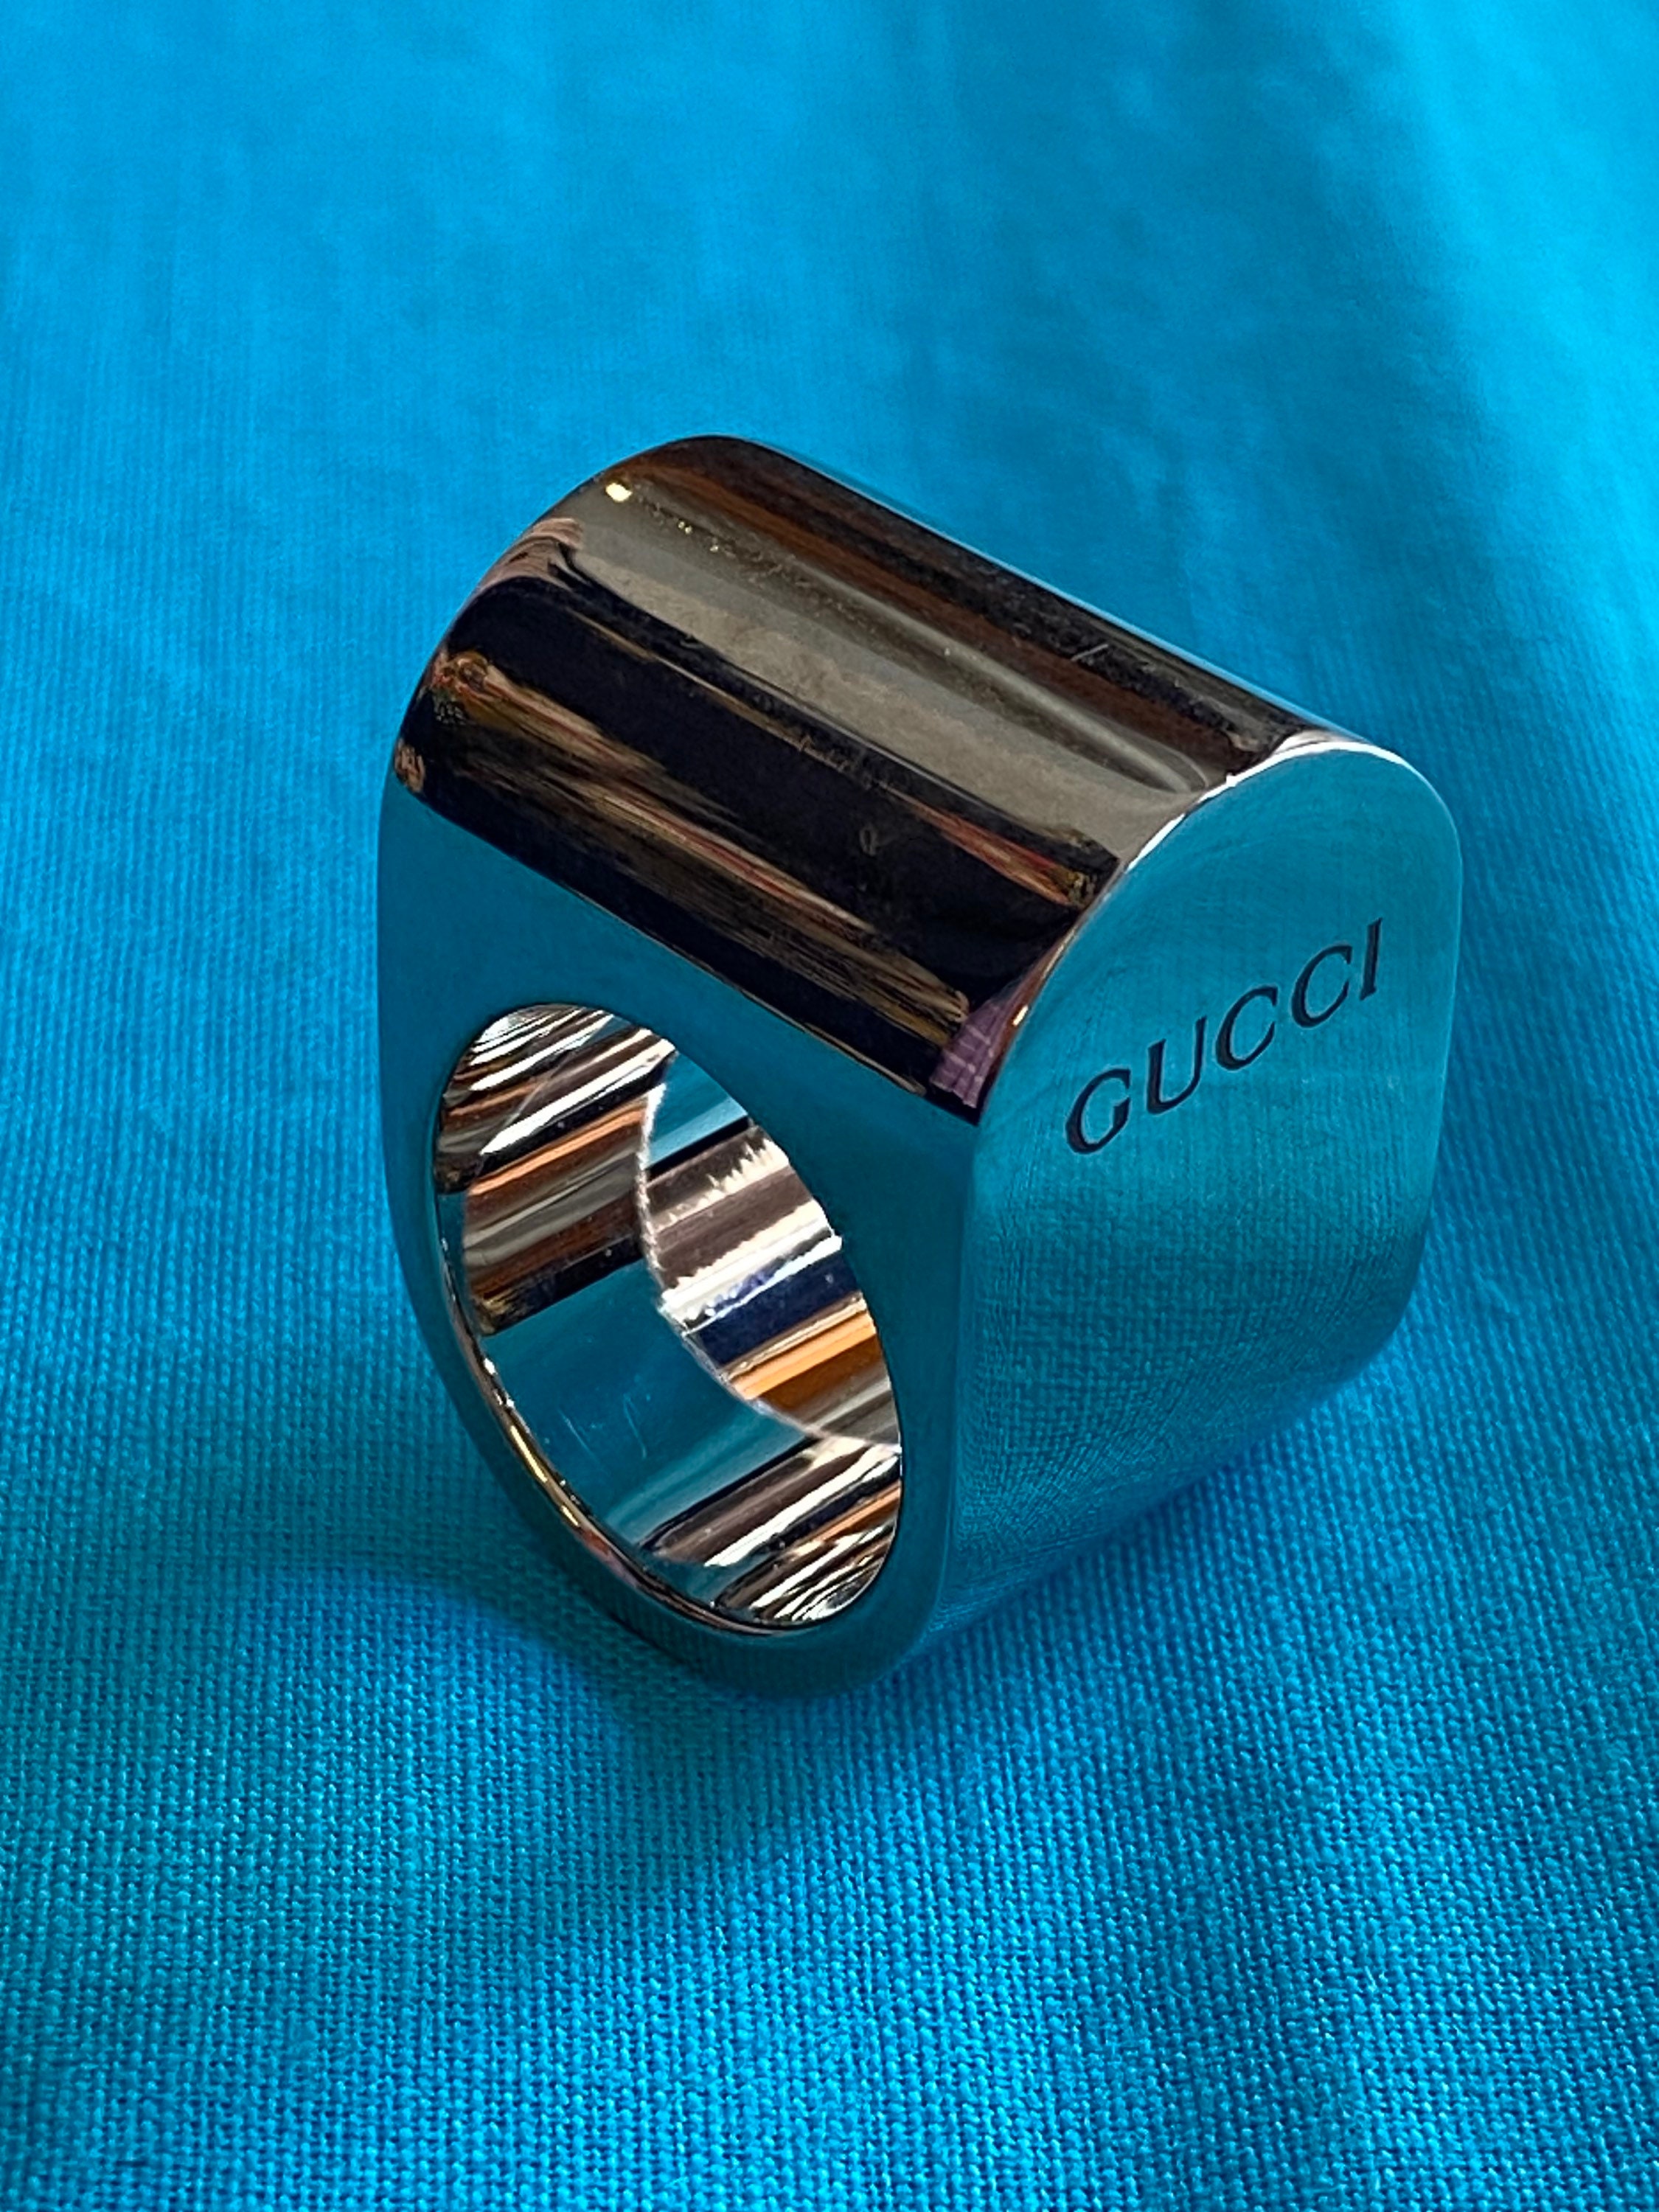 GUCCI earrings Silver Interlocking GG Logo Men Women Silver 925 W/Box  unused 